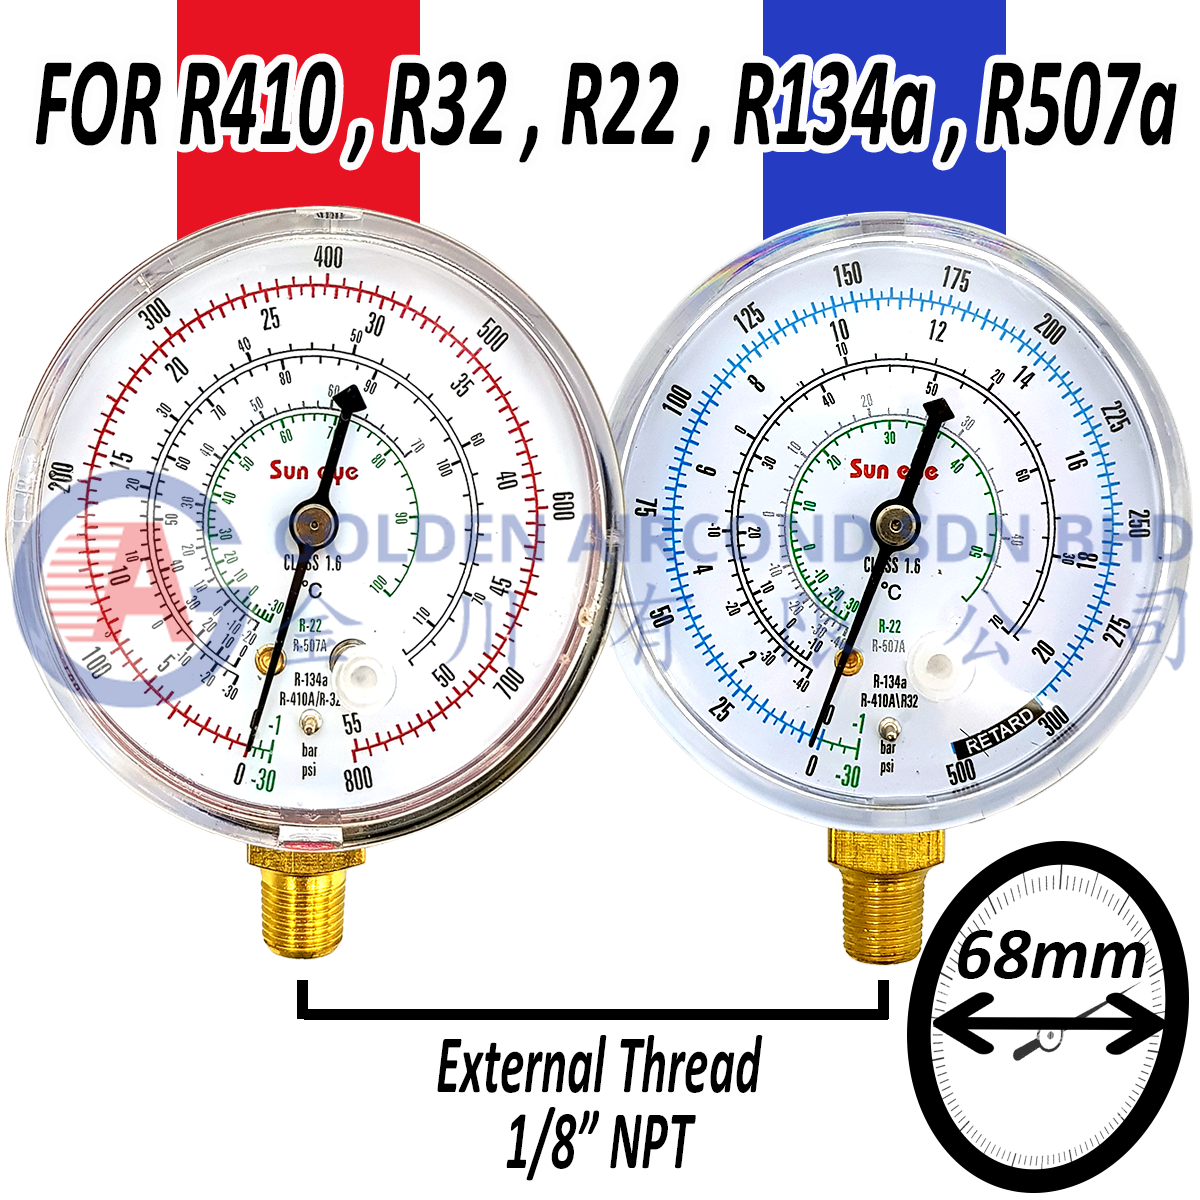 Sun Eye Meter Gauge R410, R32, R22, R134a, R507a